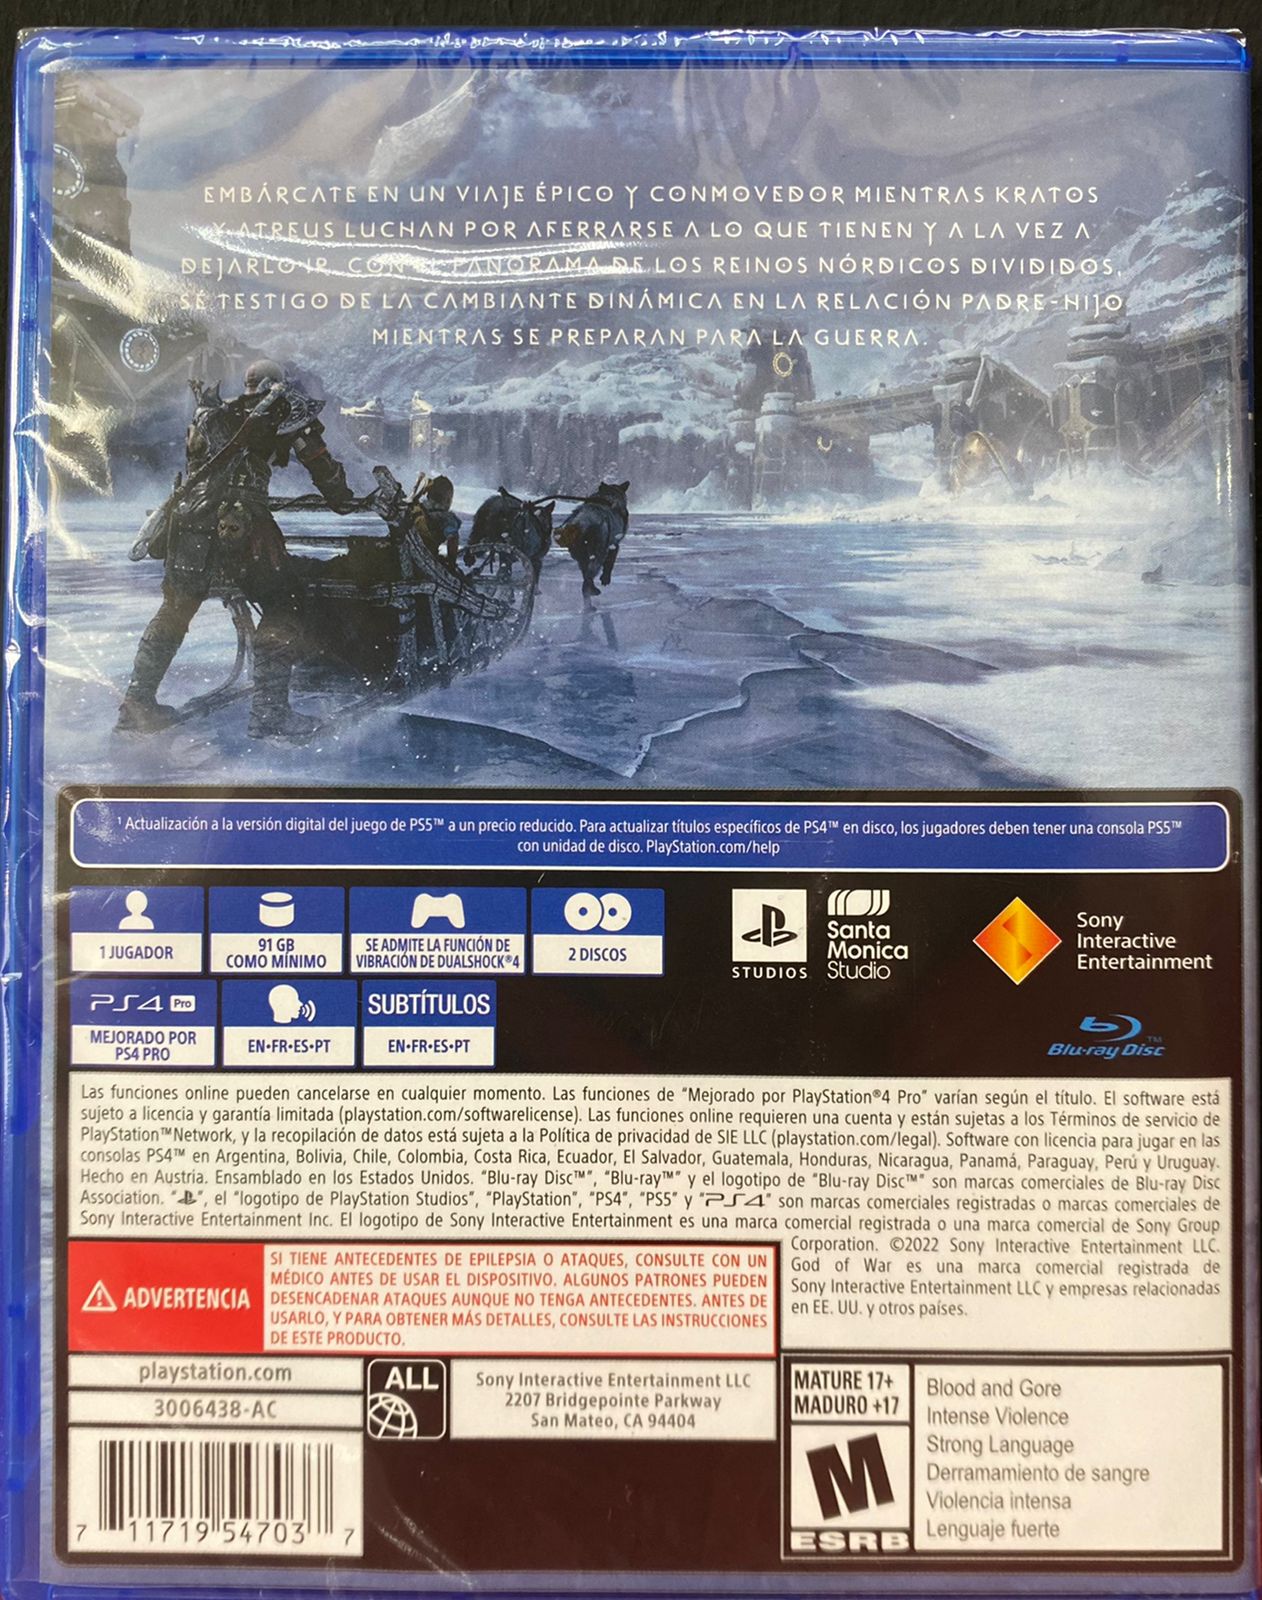 PS4 God of War Ragnarok – GameStation